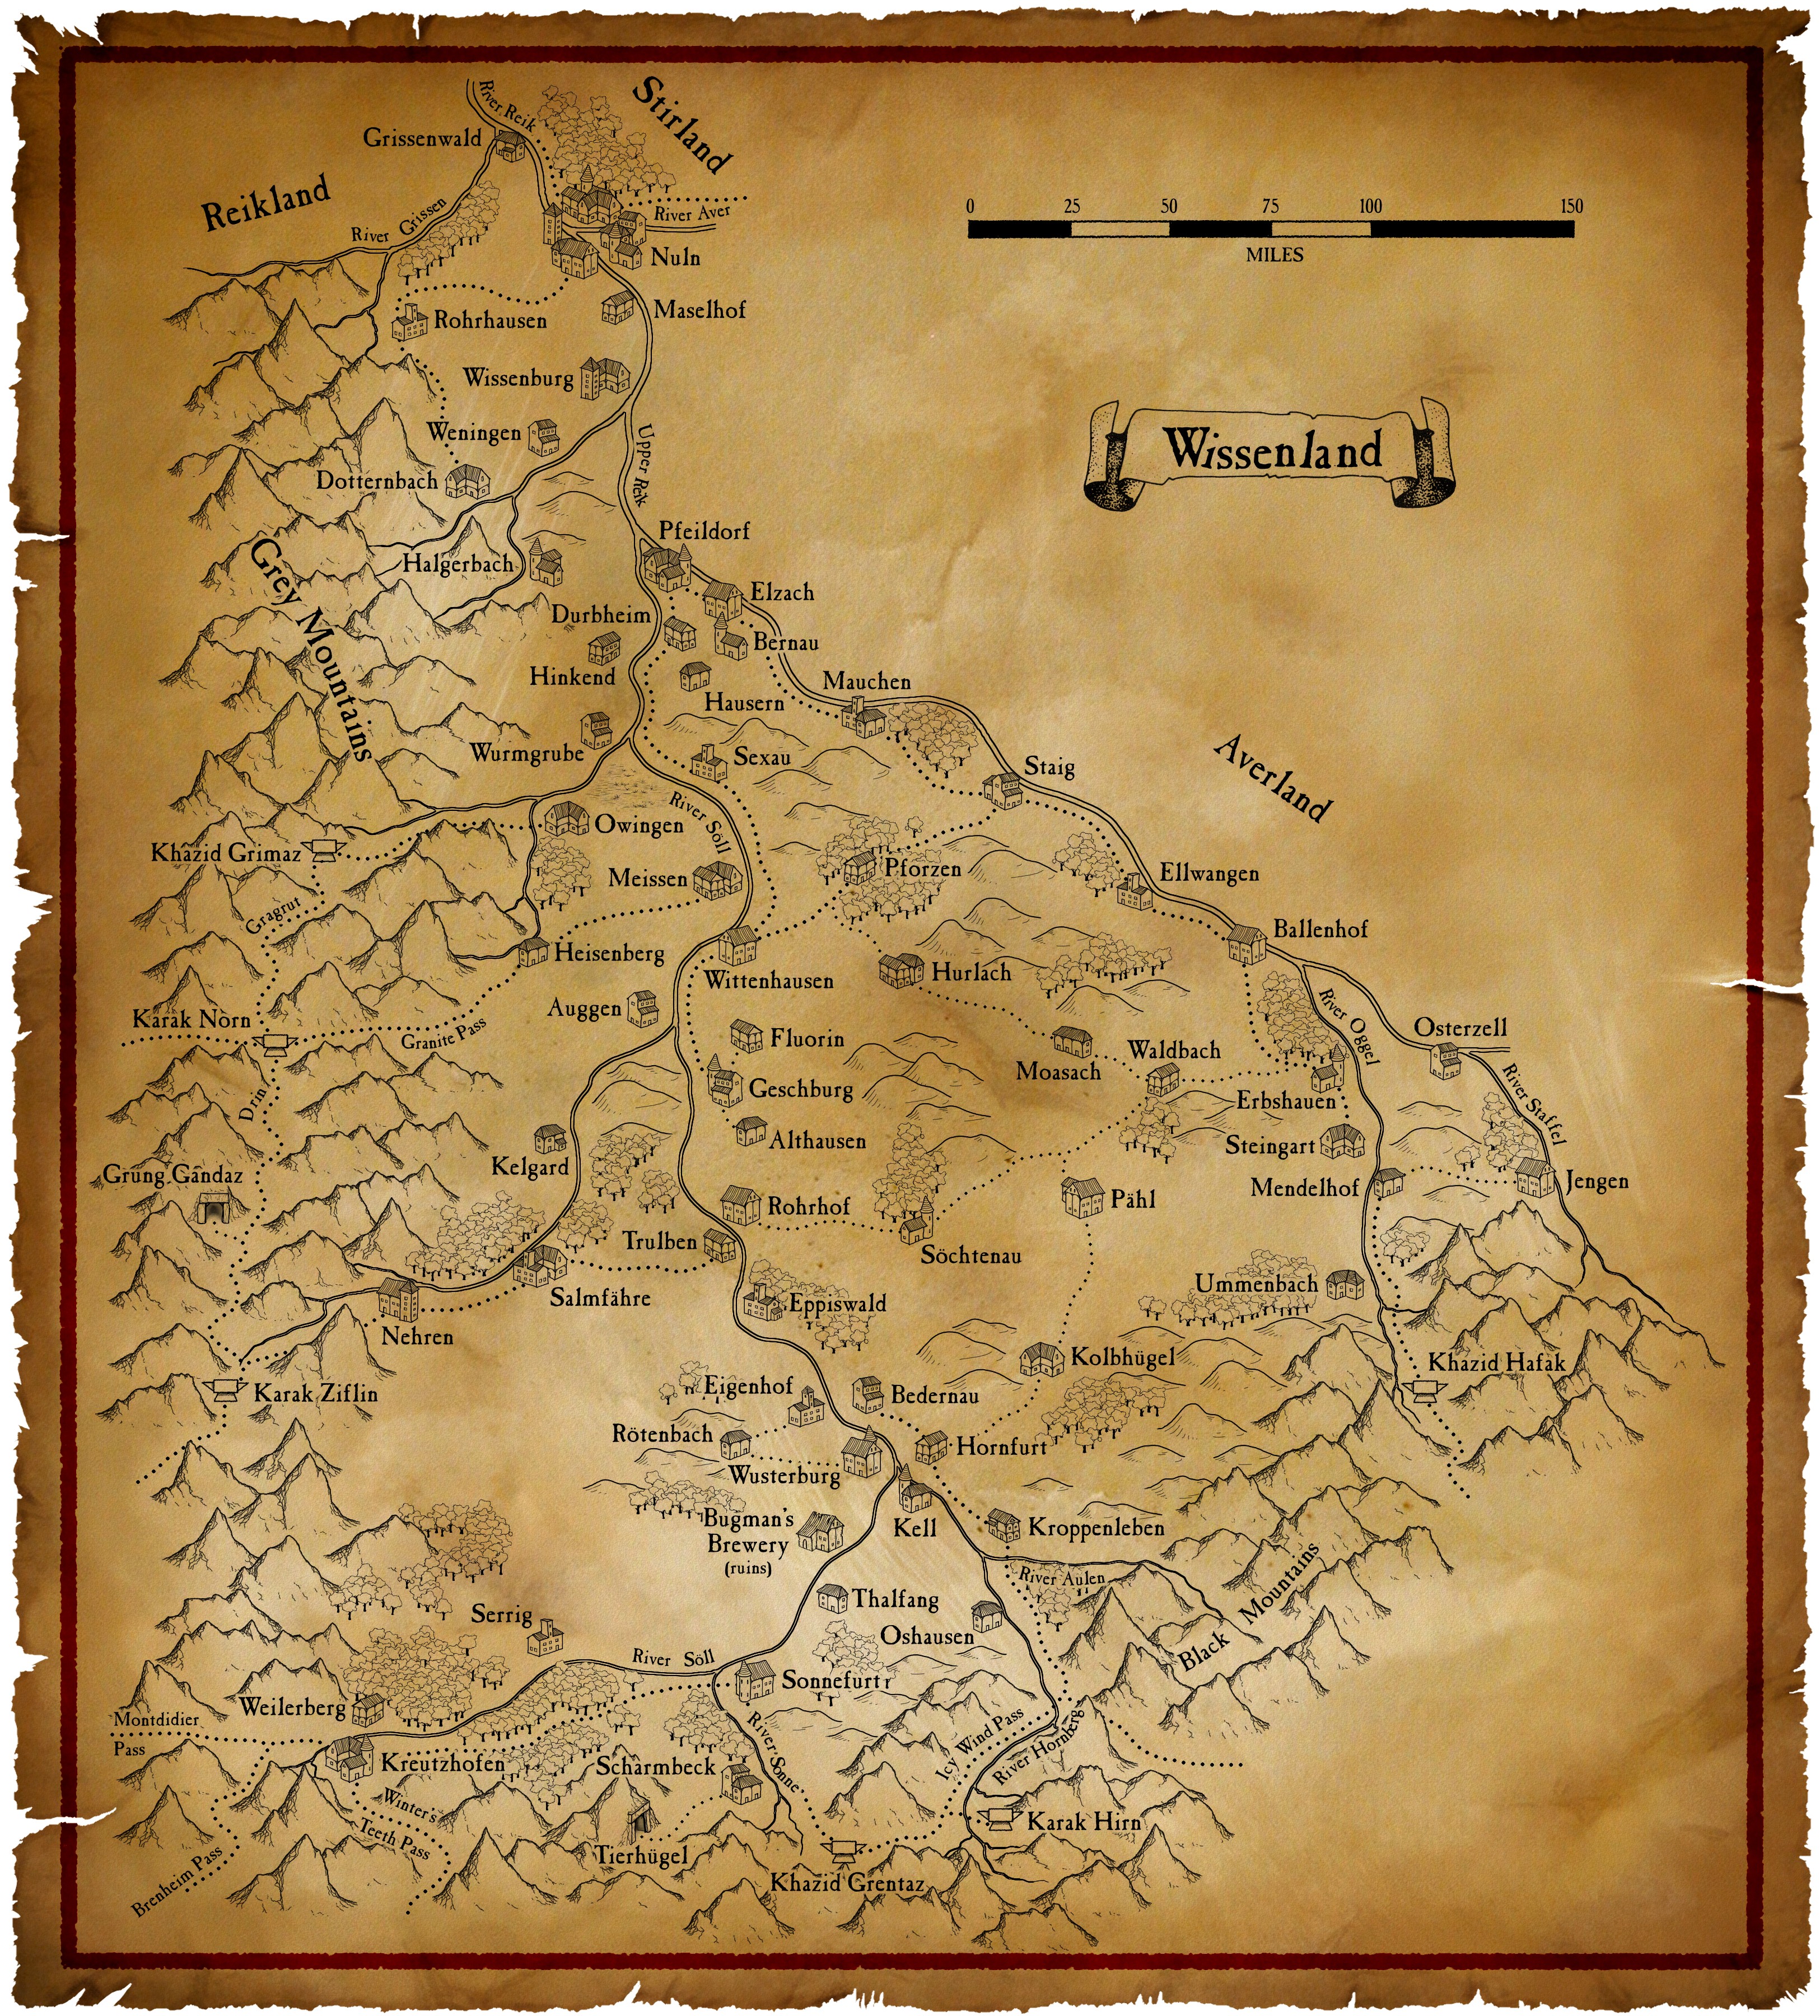 [Aide de jeu] Géographie de l'Empire Wissenland